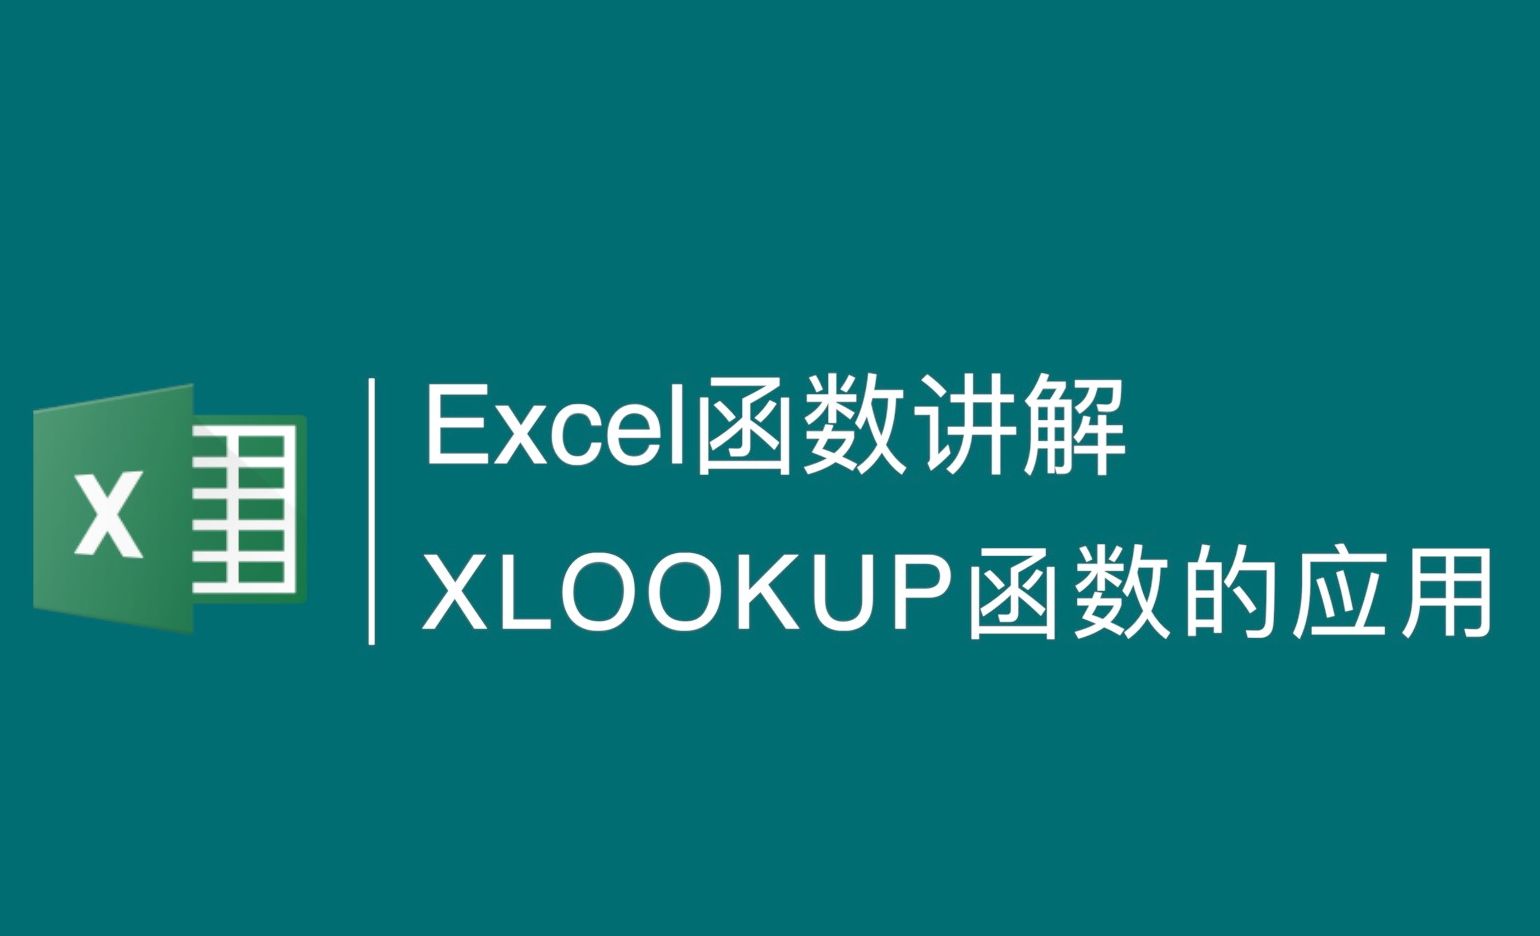 Excel-函数XLOOKUP的实际应用